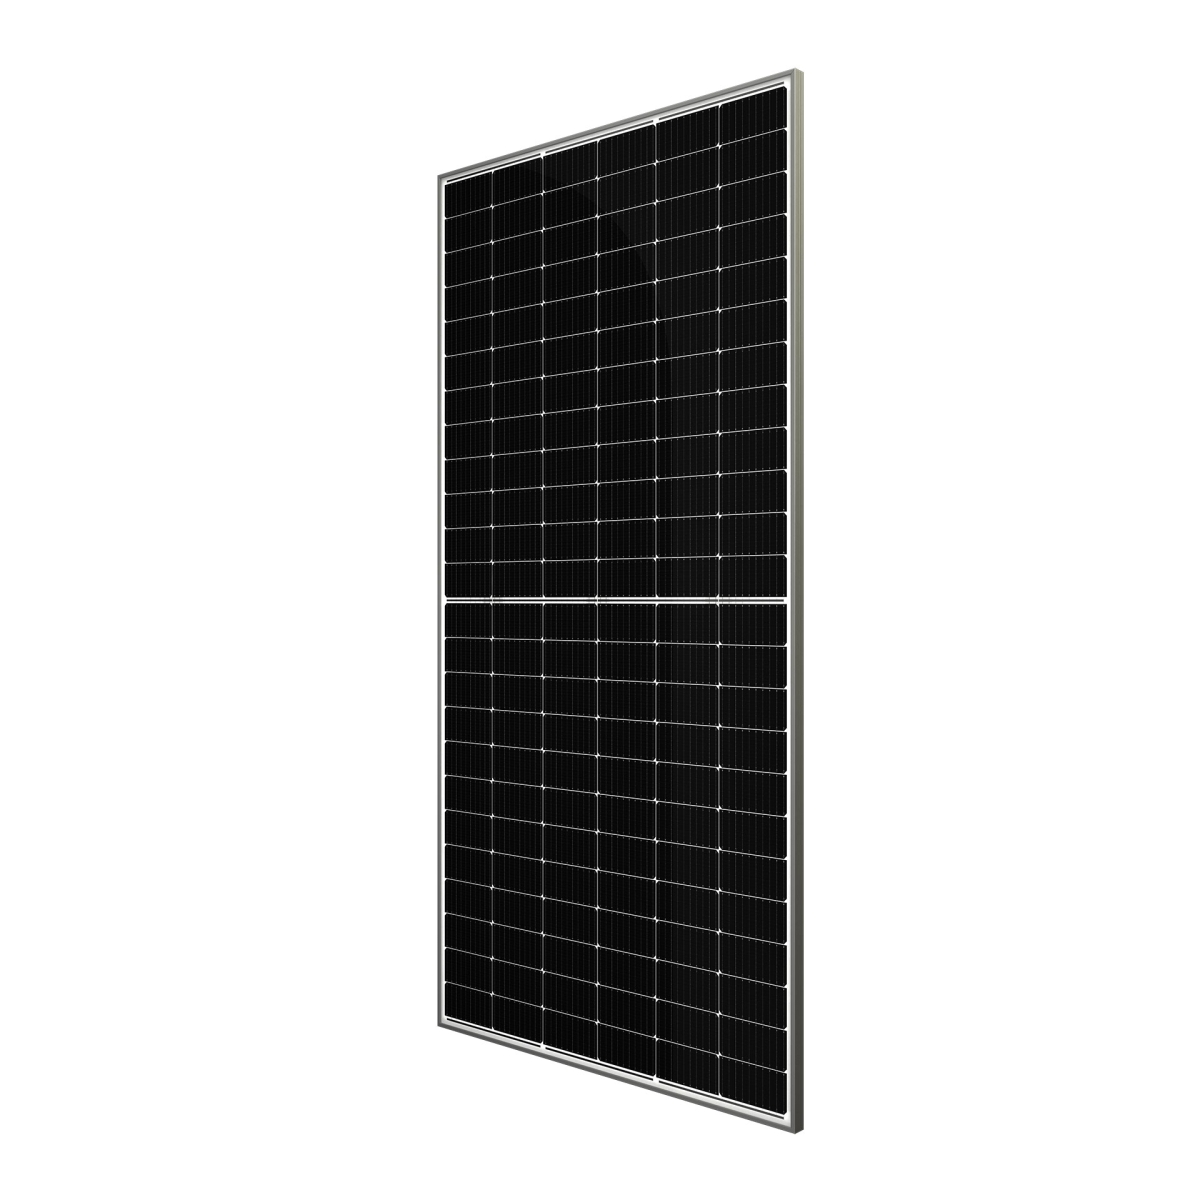 CW Enerji 535Wp M10 144PM Cells Half-Cut MB Solar Panel